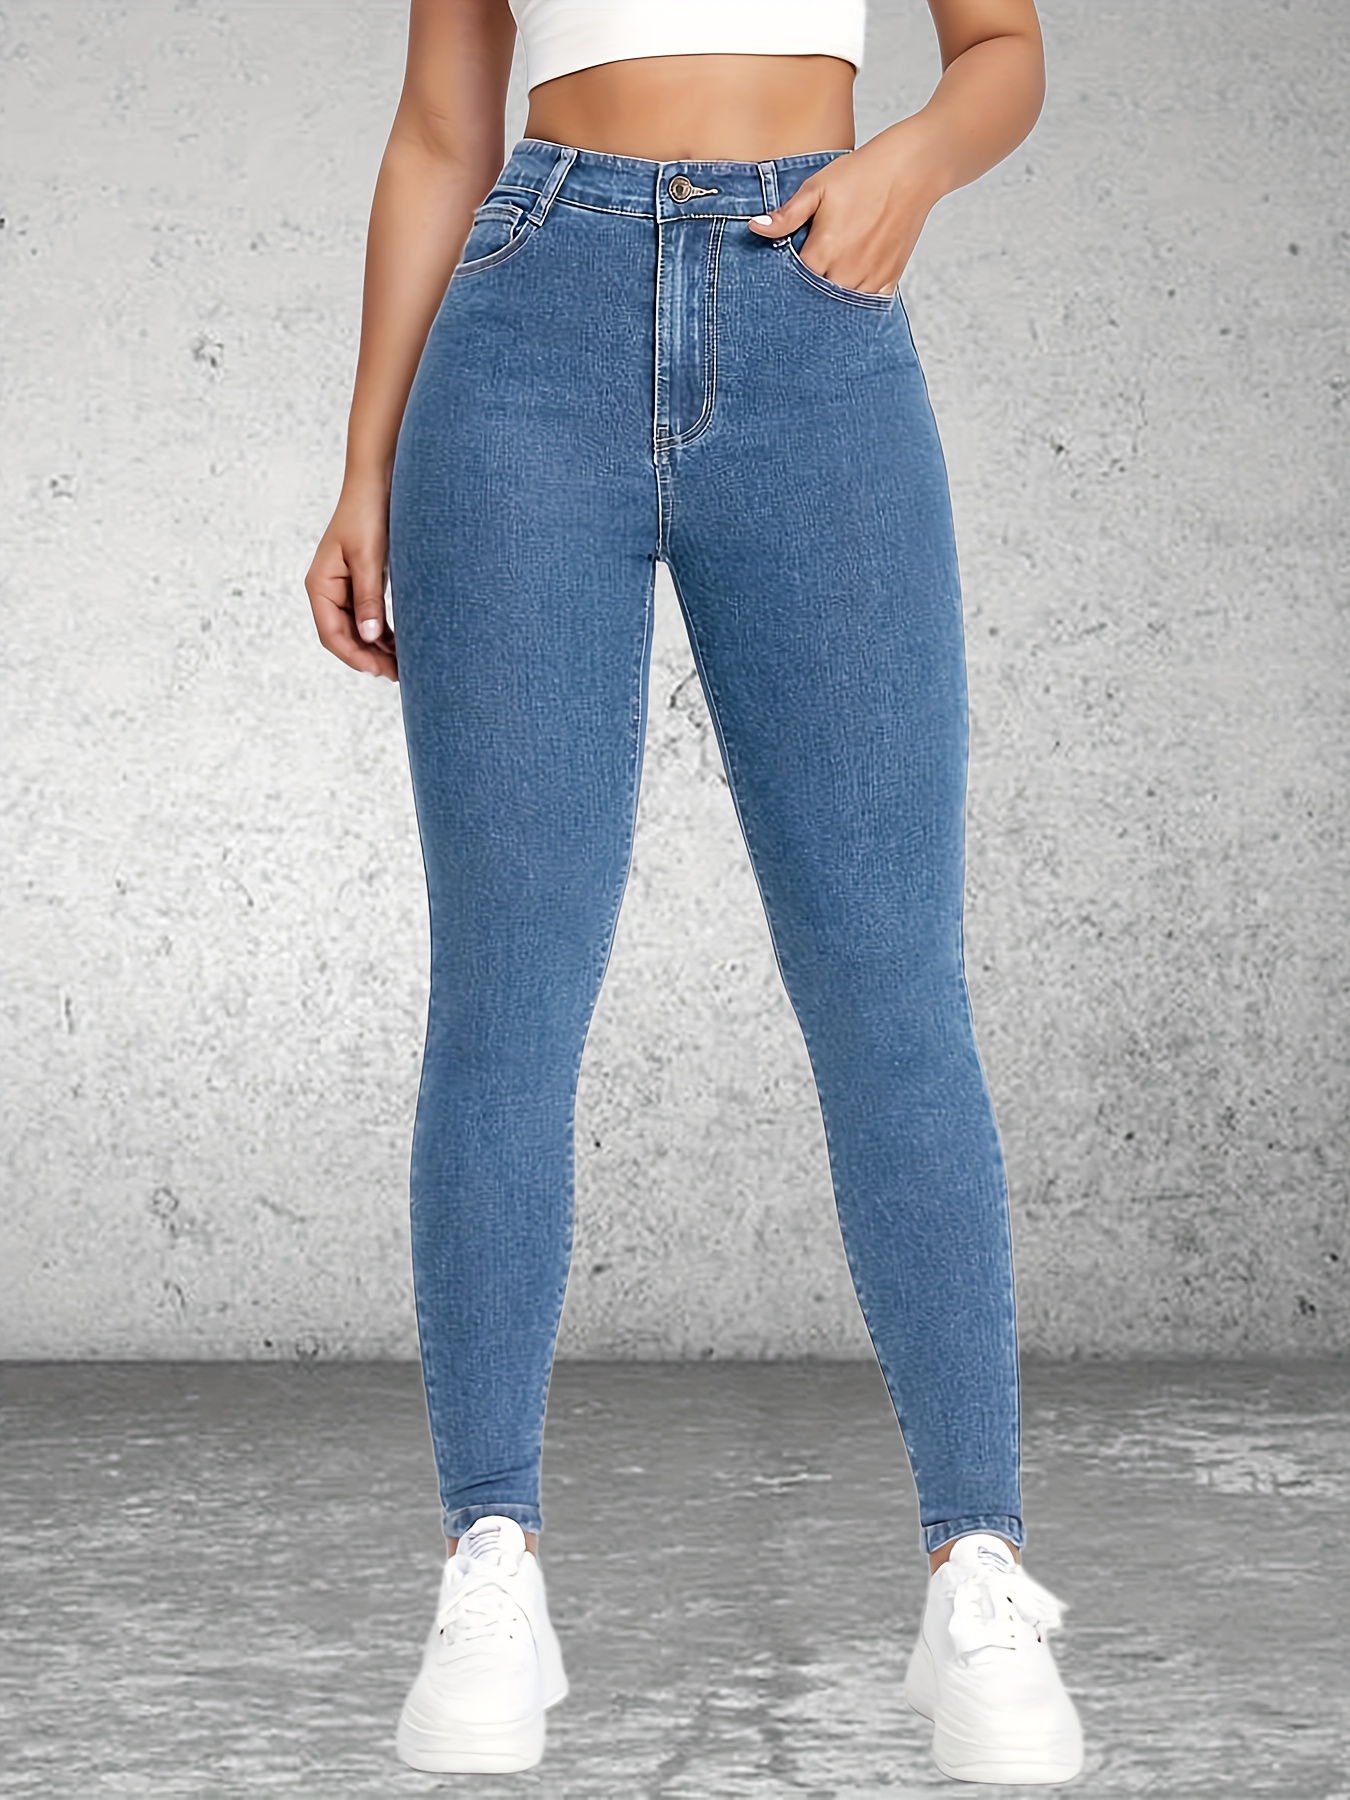 Pantalones vaqueros ajustados de cintura alta para mujer, Jeans